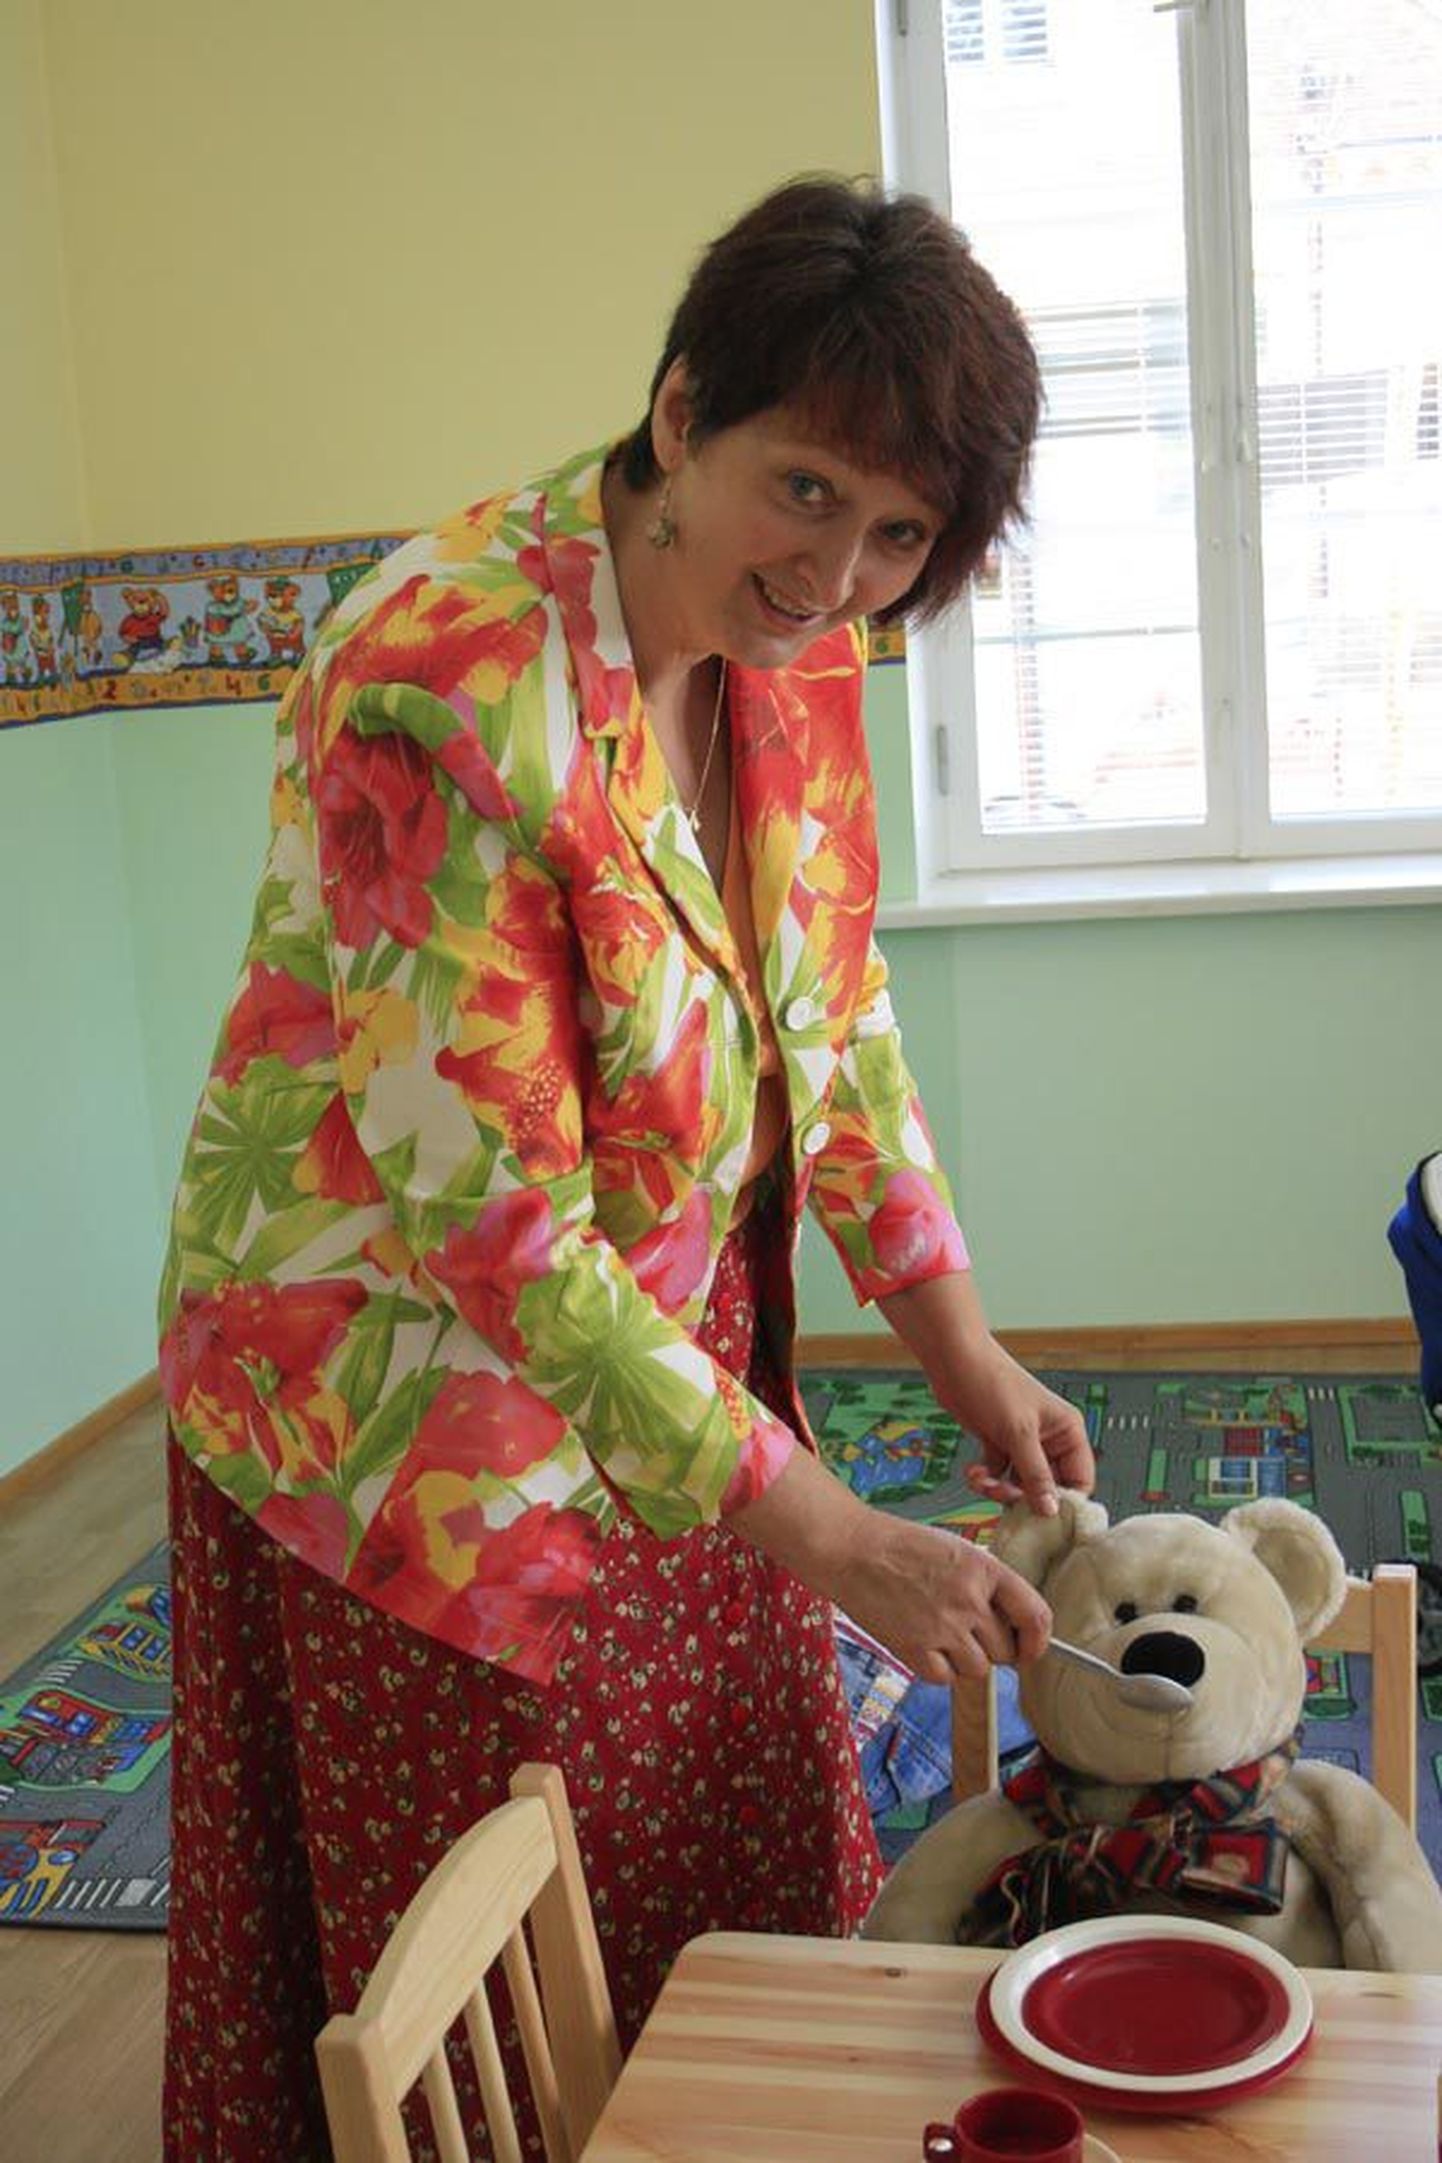 Projektijuht Anne-Ly Ütsiku sõnul on töötutel vanematel Viljandis lapsehoiuteenust hädasti tarvis.